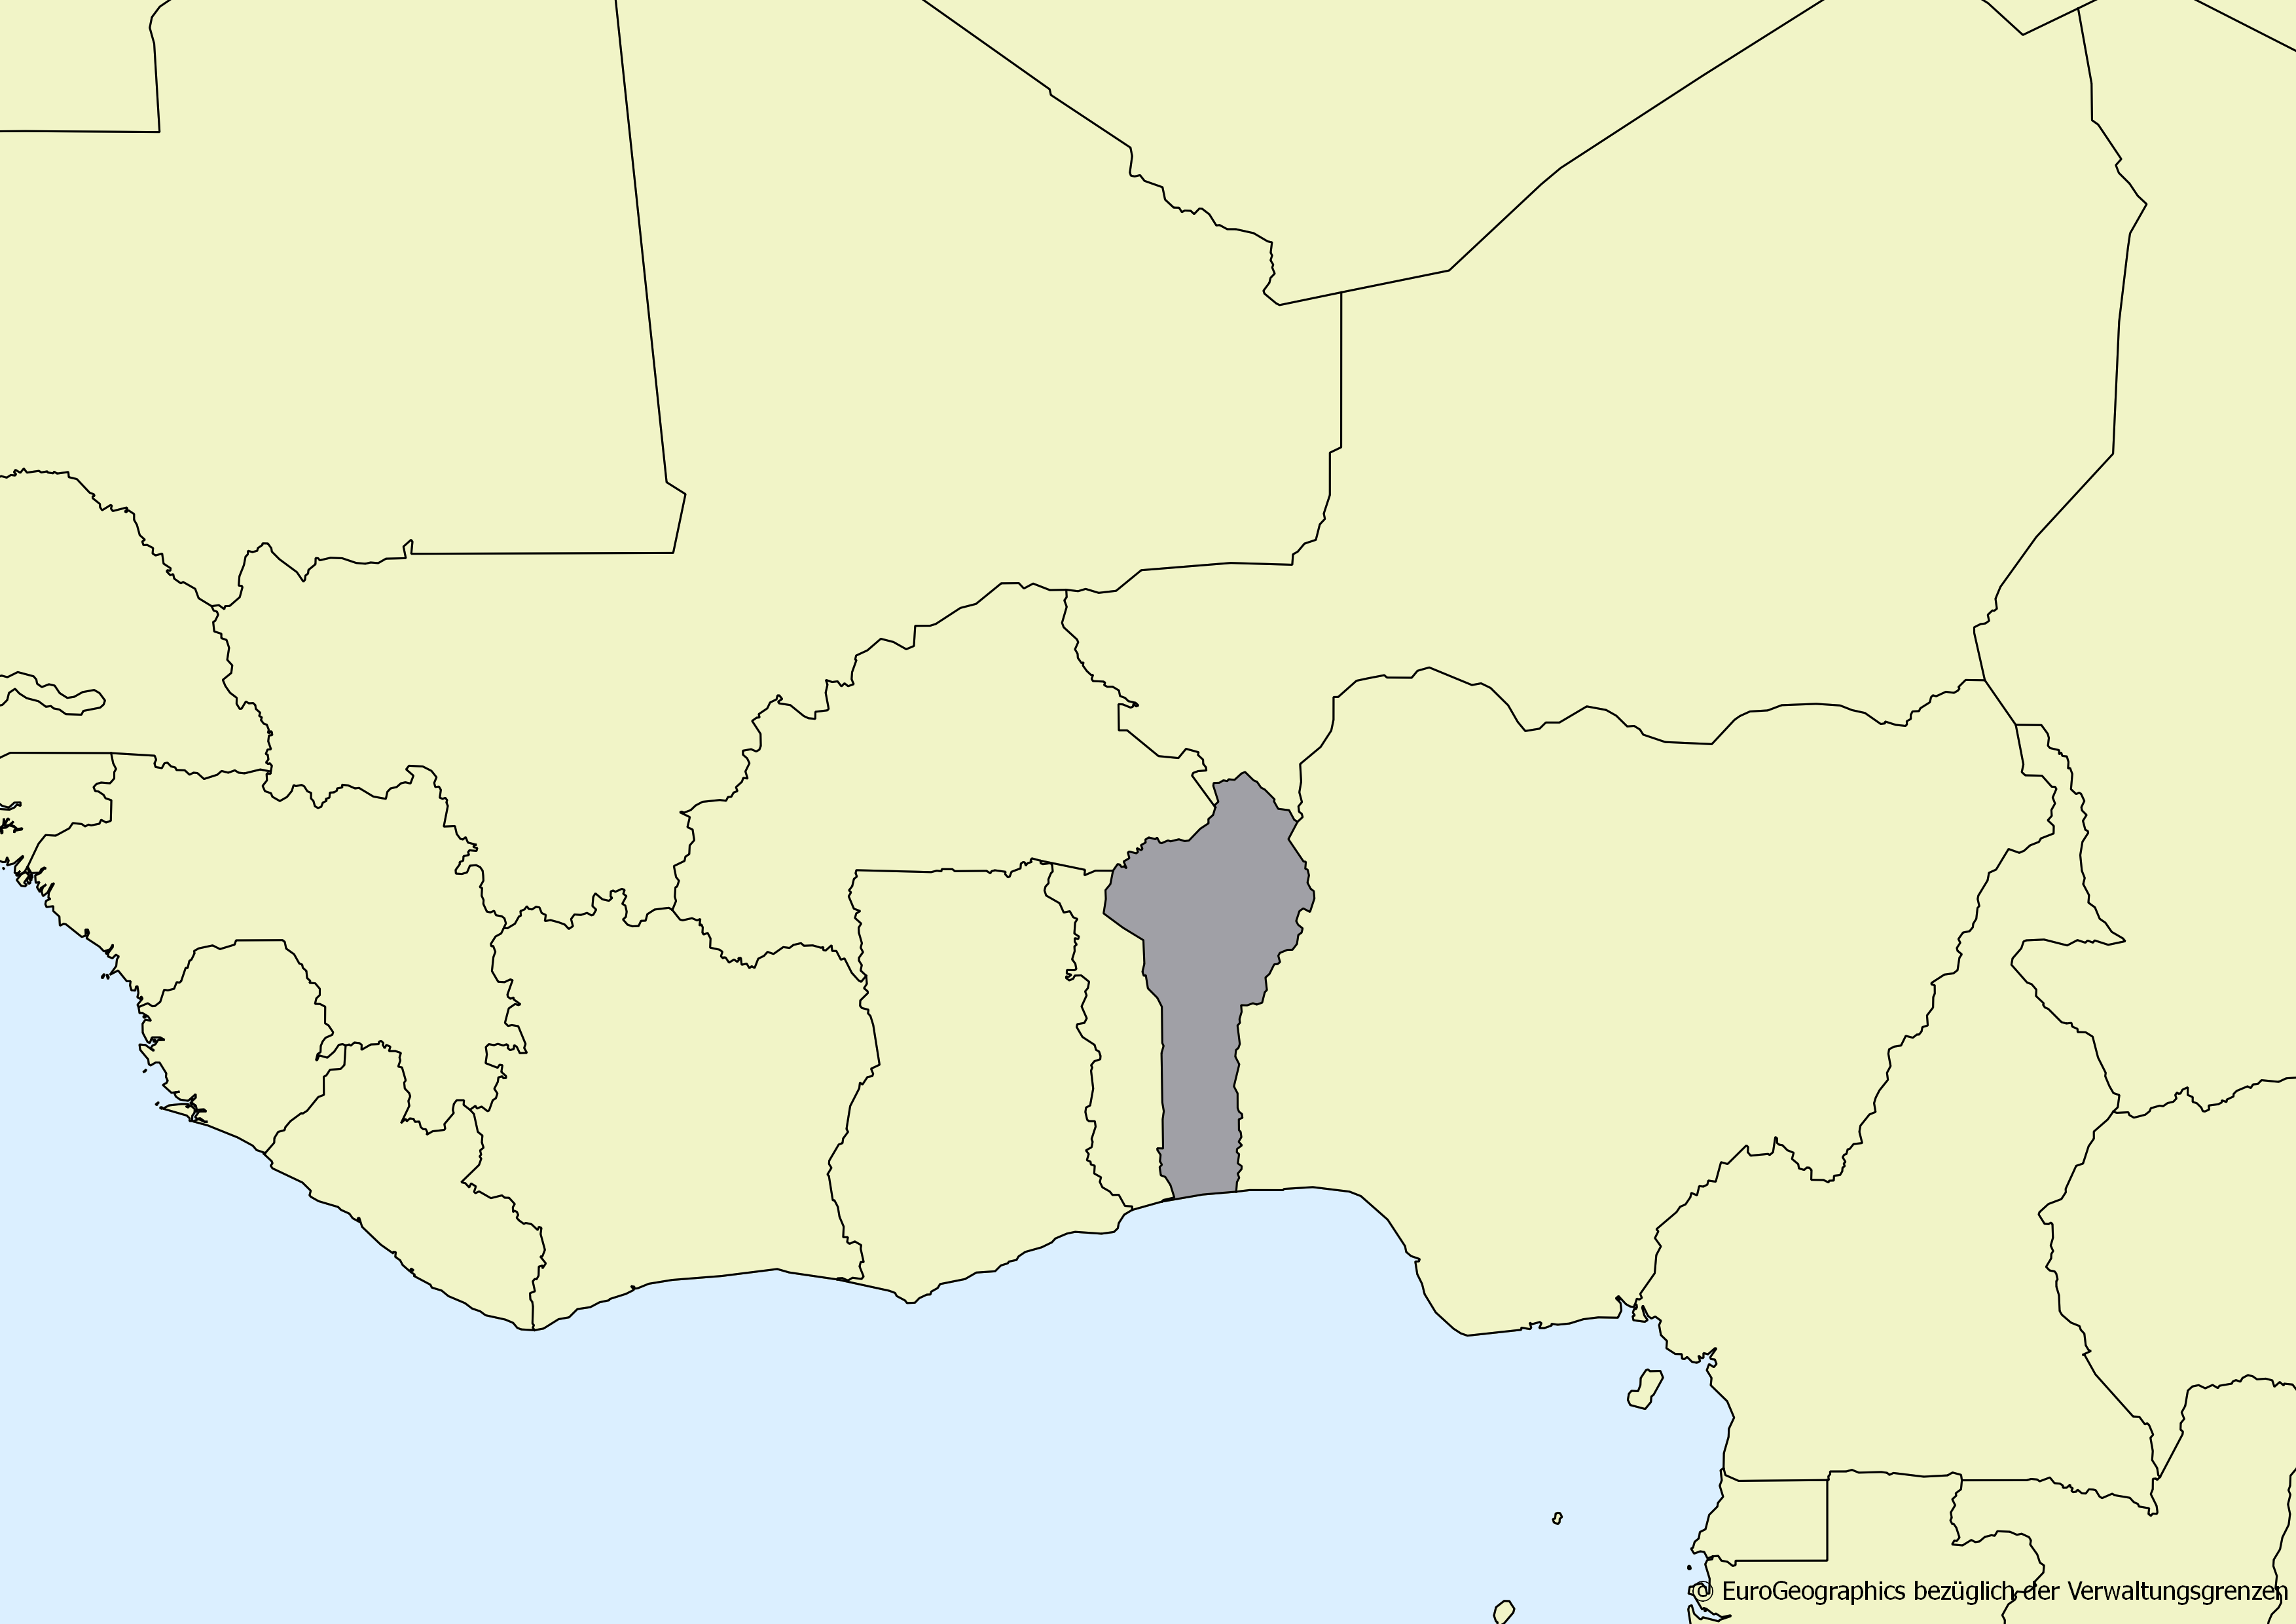 Ausschnitt einer Karte des afrikanischen Kontinents mit Ländergrenzen. Im Zentrum steht Benin grau hervorgehoben